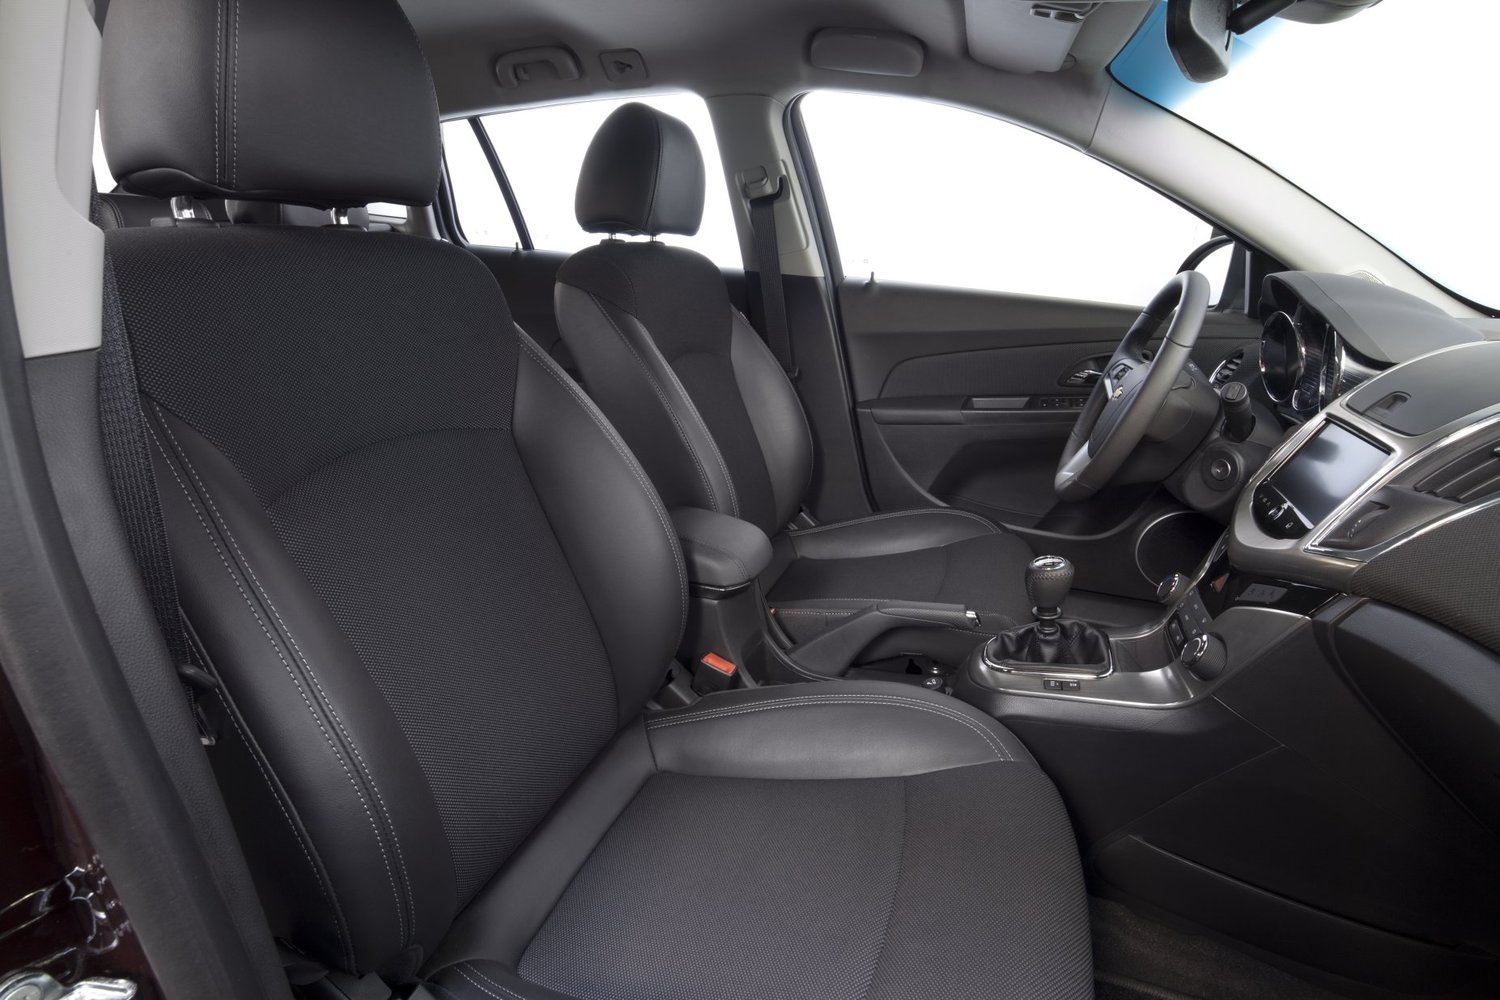 универсал Chevrolet Cruze 2012 - 2015г выпуска модификация 1.4 AT (140 л.с.)